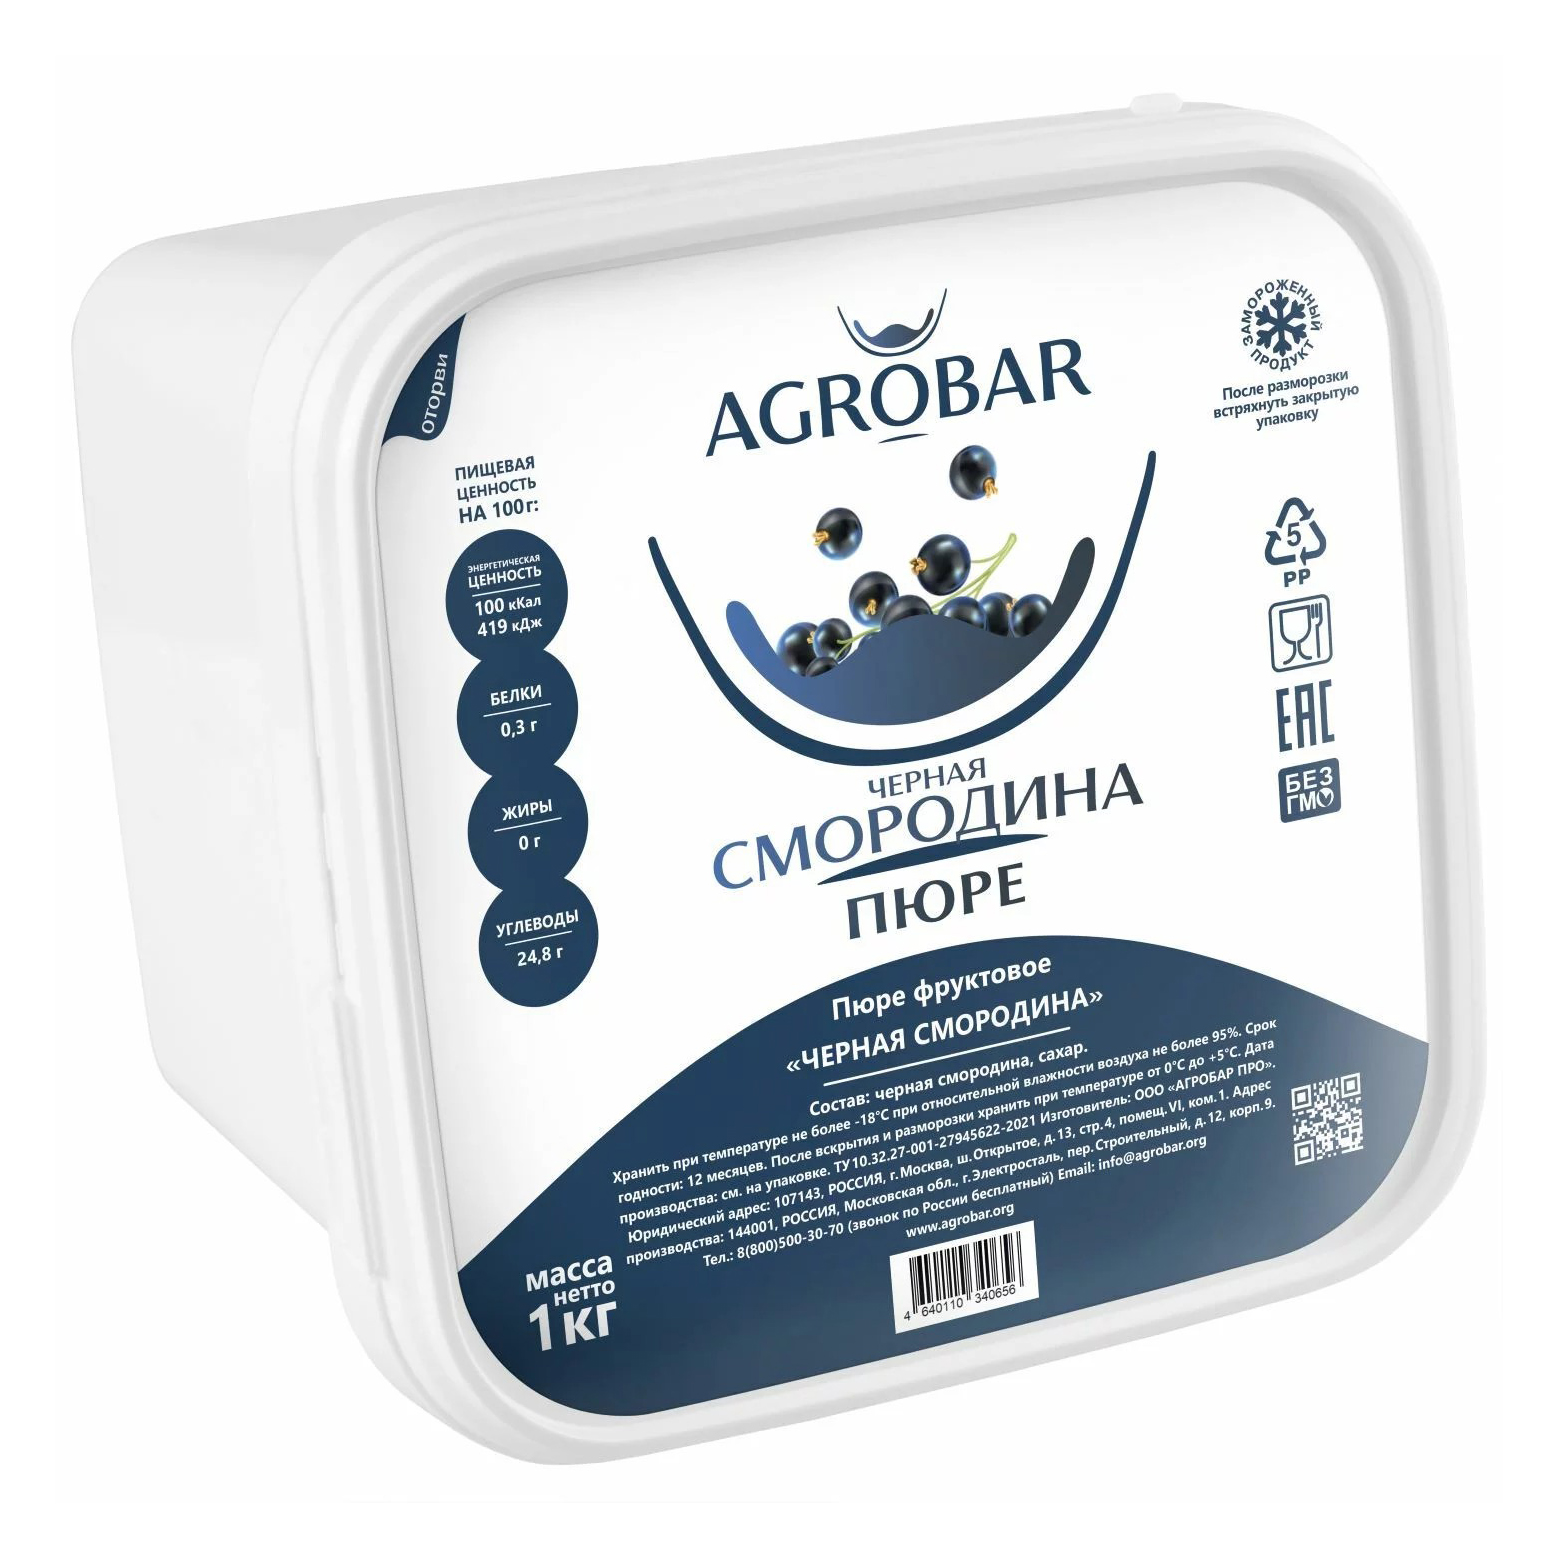 Черная смородина Agrobar протертая замороженная 1 кг